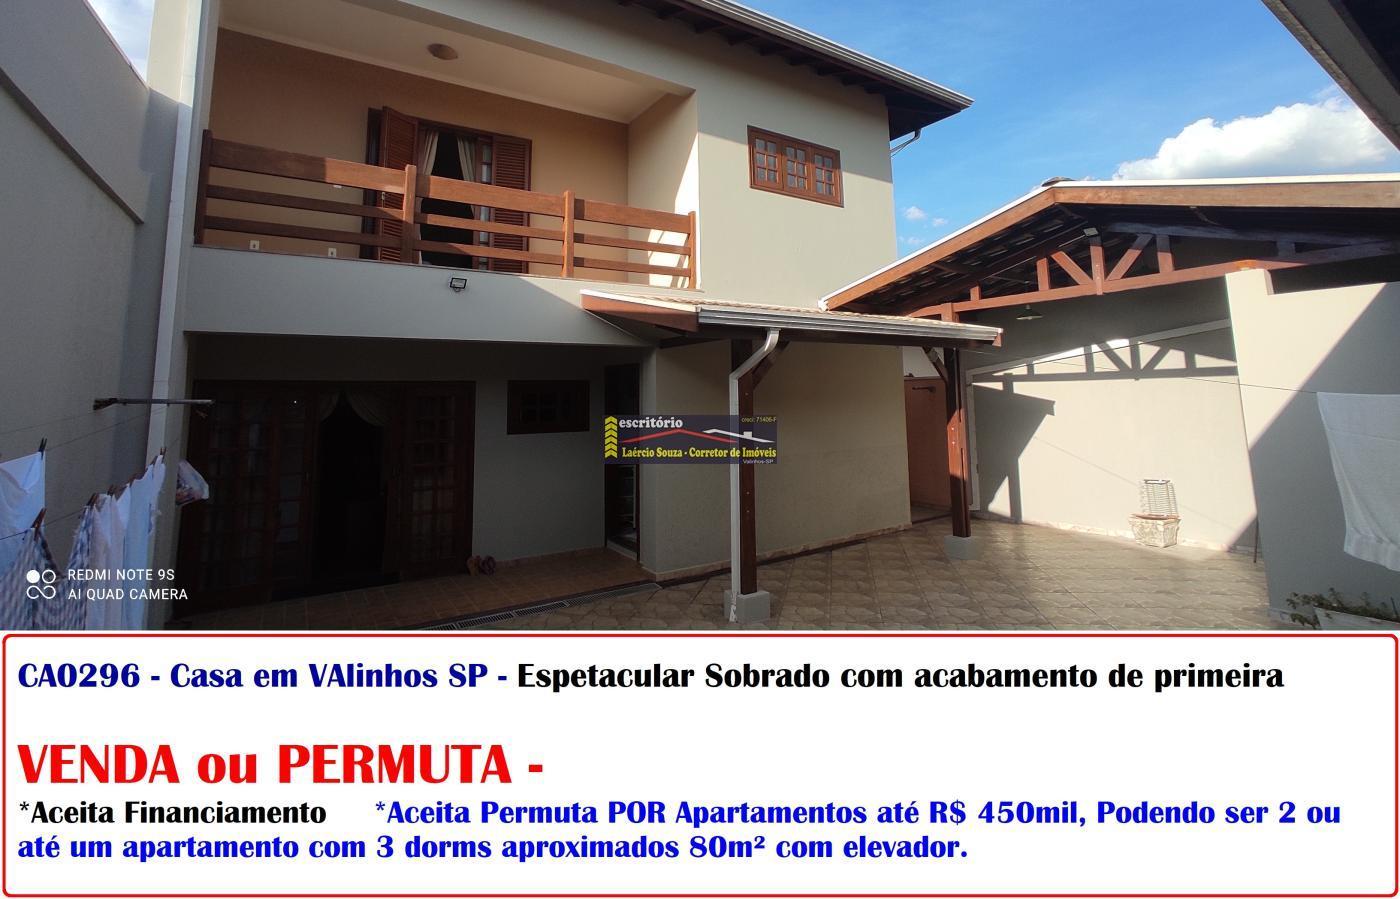 Casa a Venda em Valinhos SP, R$ 895mil, Aceita até R$ 450mil em Apartamentos, Aceita Financiamento